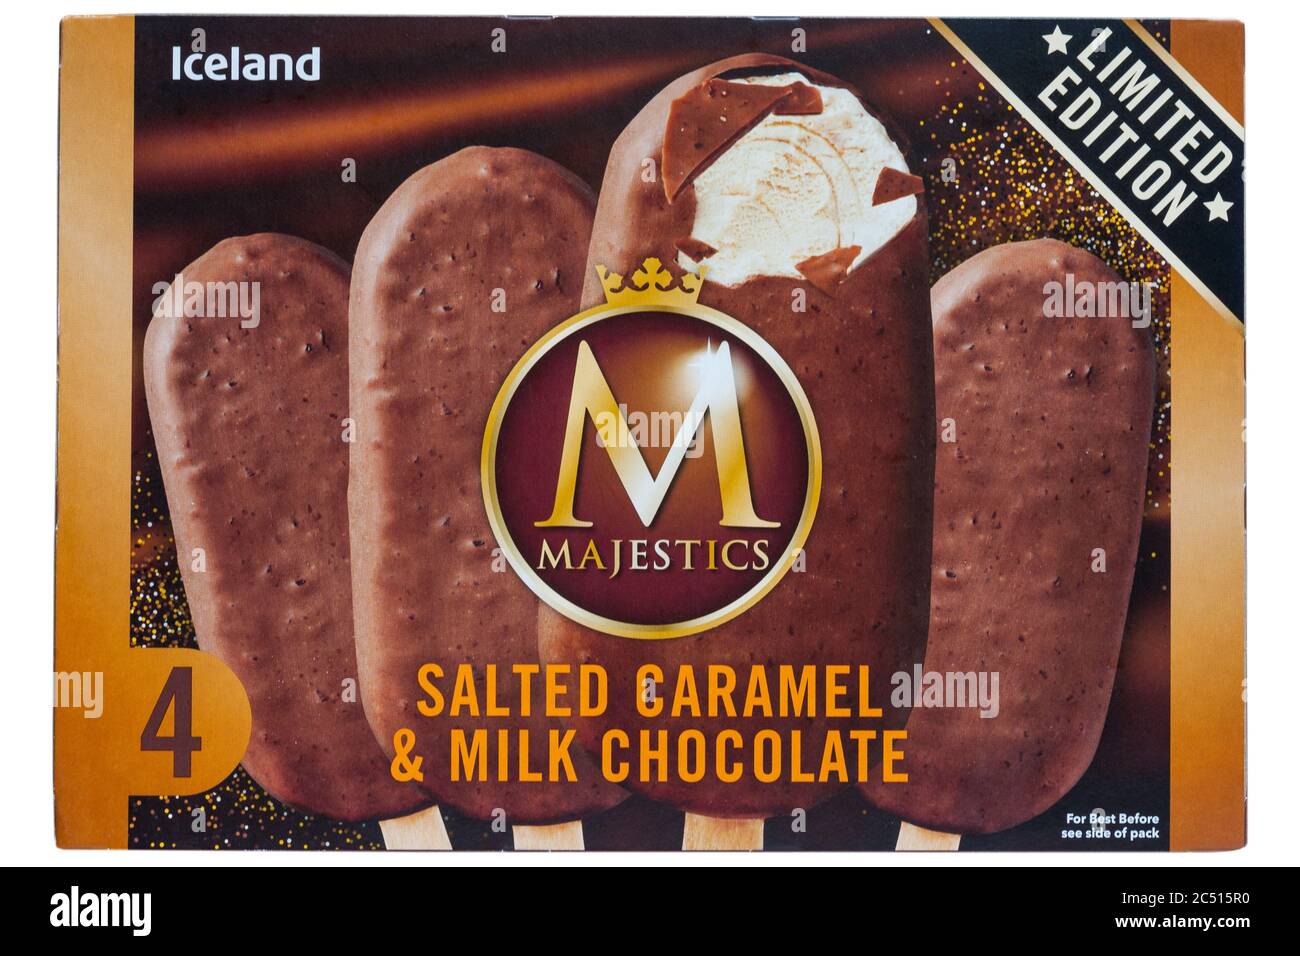 Scatola di gelato al caramello salato e al cioccolato al latte in edizione limitata Iceland Majestics isolata su sfondo bianco Foto Stock